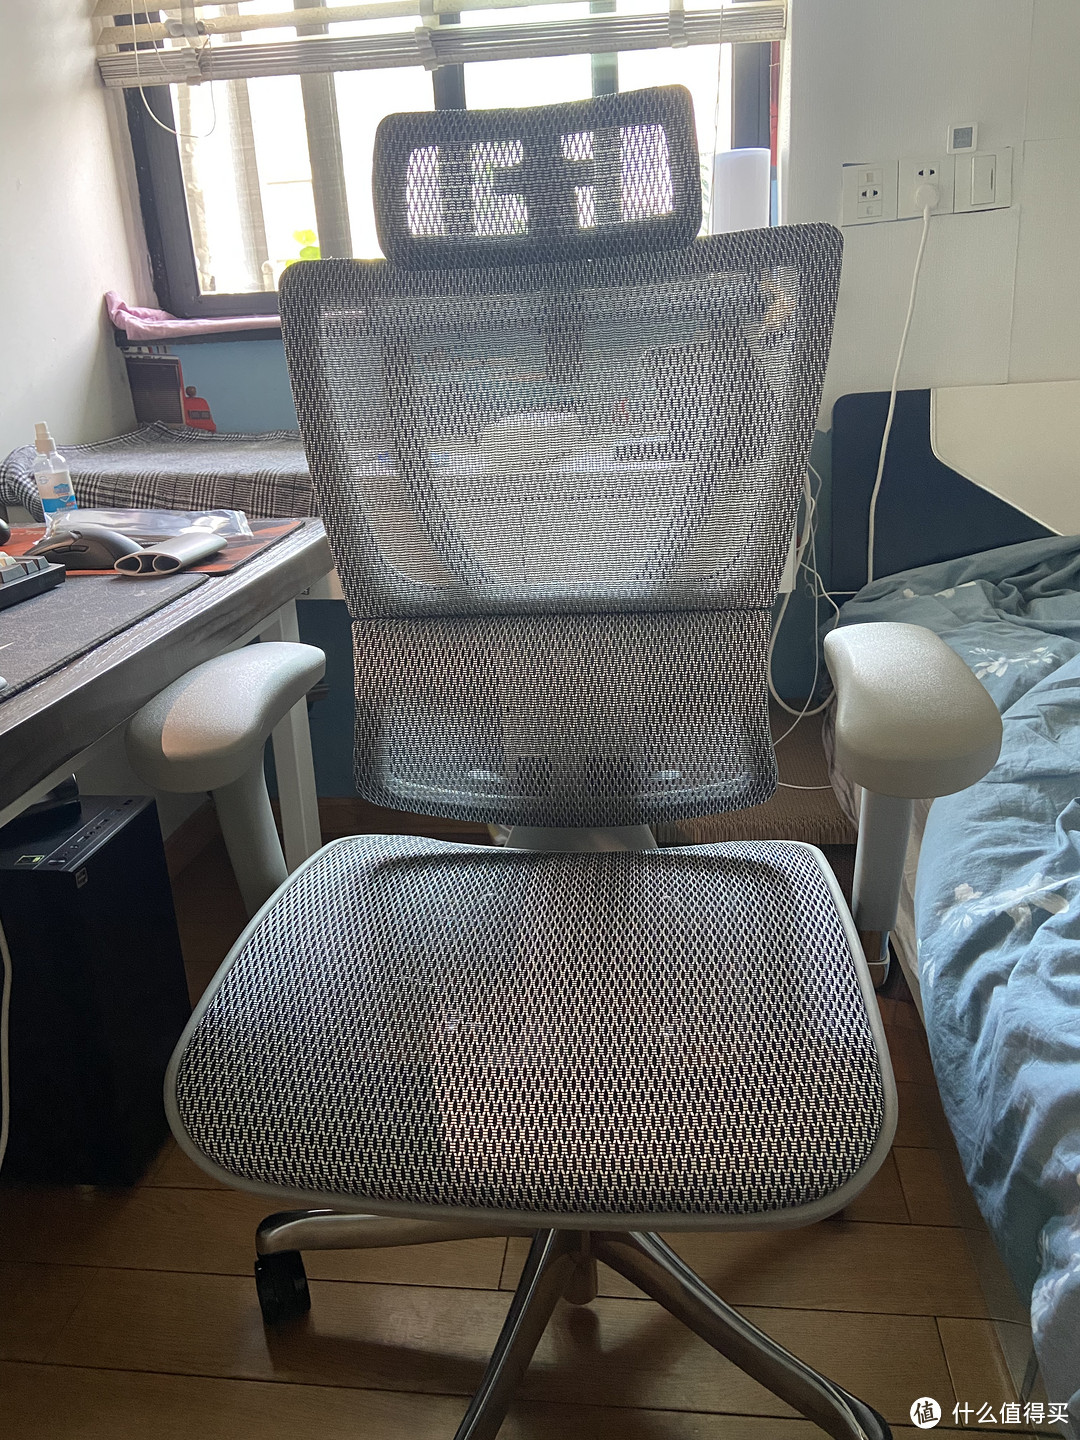 保友优旗舰人体工学椅选购和使用感受丨找到一款适合自己椅子很重要